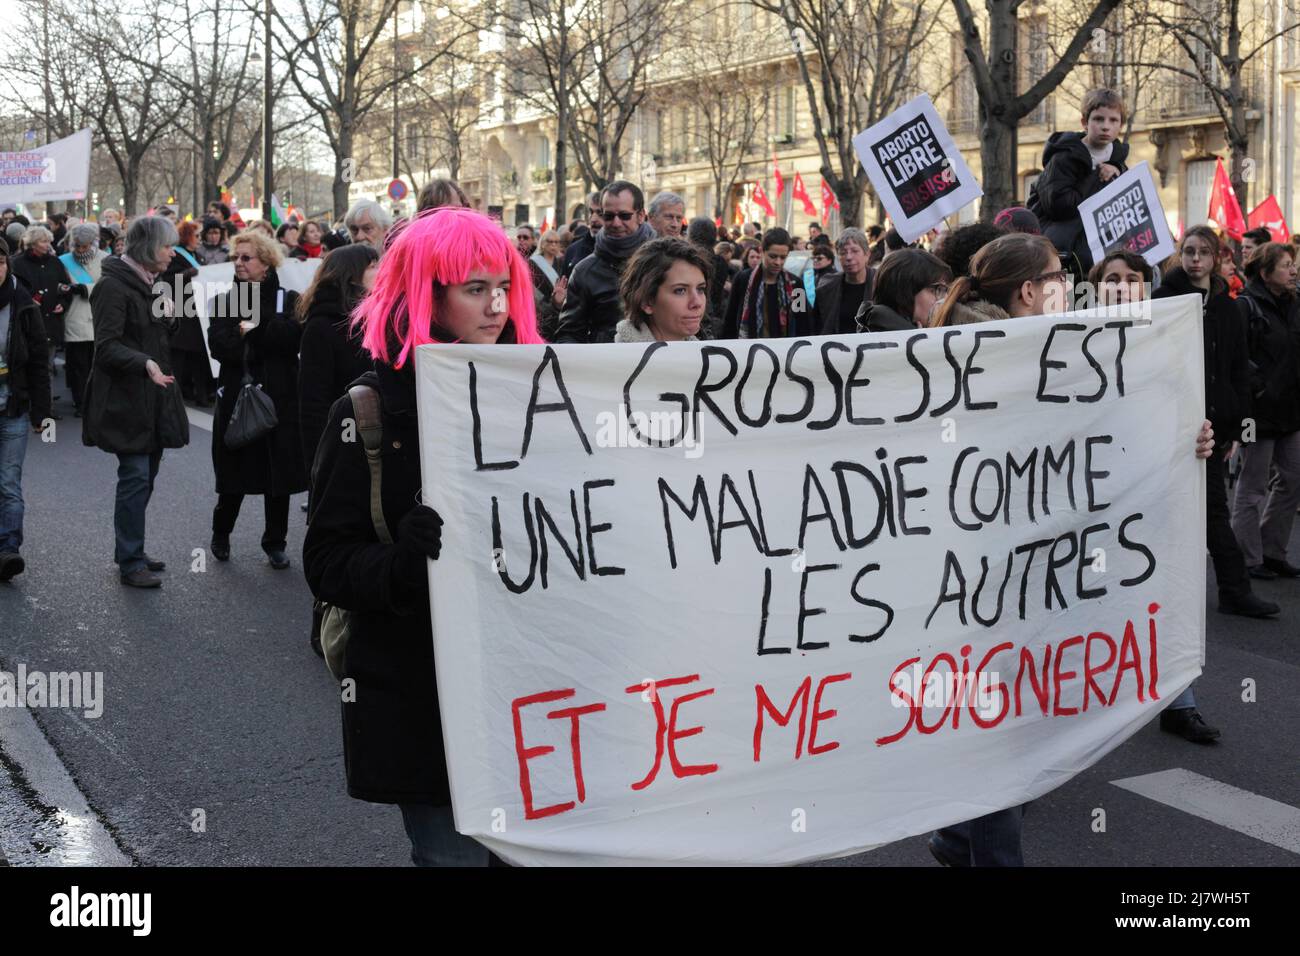 Parigi : manifestation contre le projet de loi anti-avortement en Espagne 01er février 2014. La grossesse est une maladie comme les autres et je me soi Foto Stock